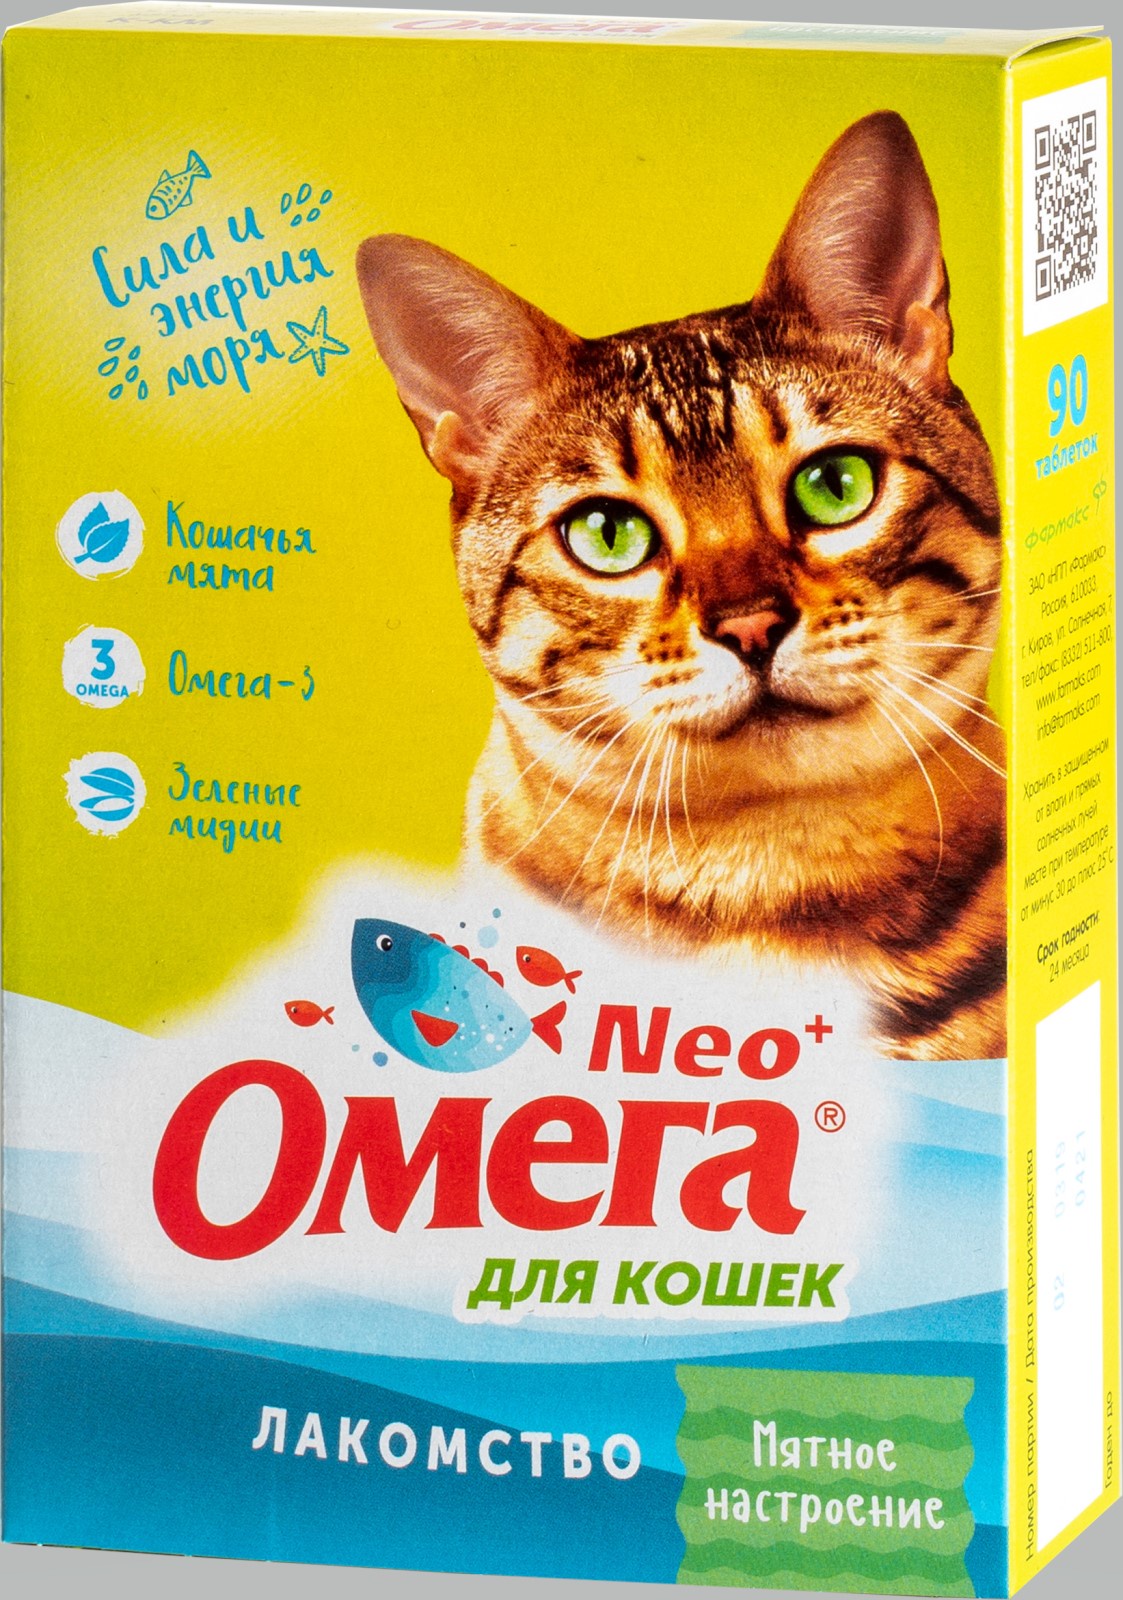 фото Лакомство "Омега Neo+" с кошачьей мятой "Мятное настроение" для кошек 90 таблеток, 45 г.